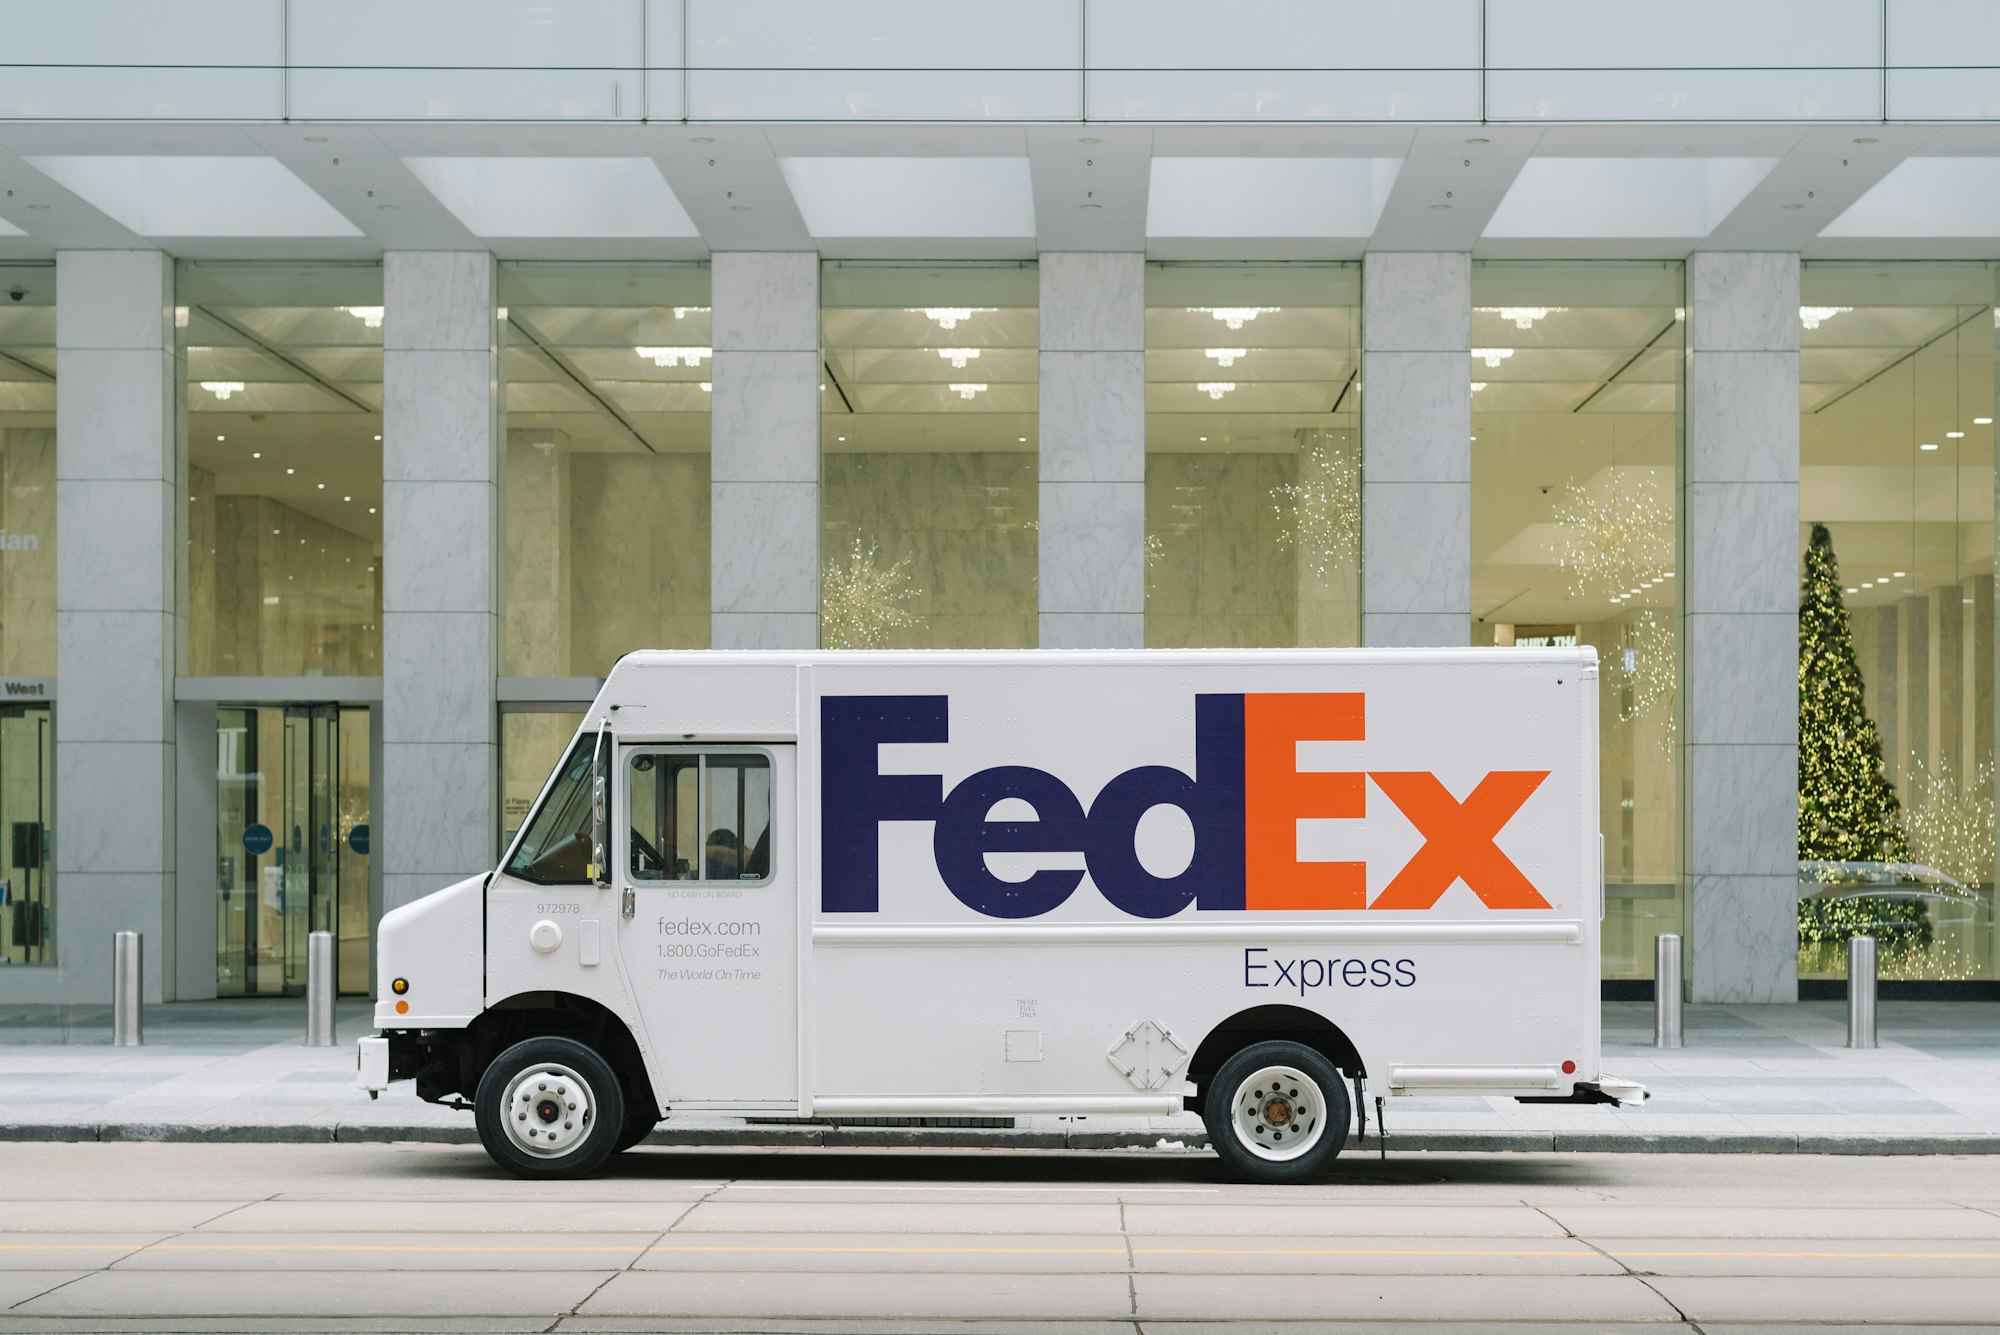 Teslimat şirketi FedEX, Delhivery'e yüz milyon dolar yatırım yaptı